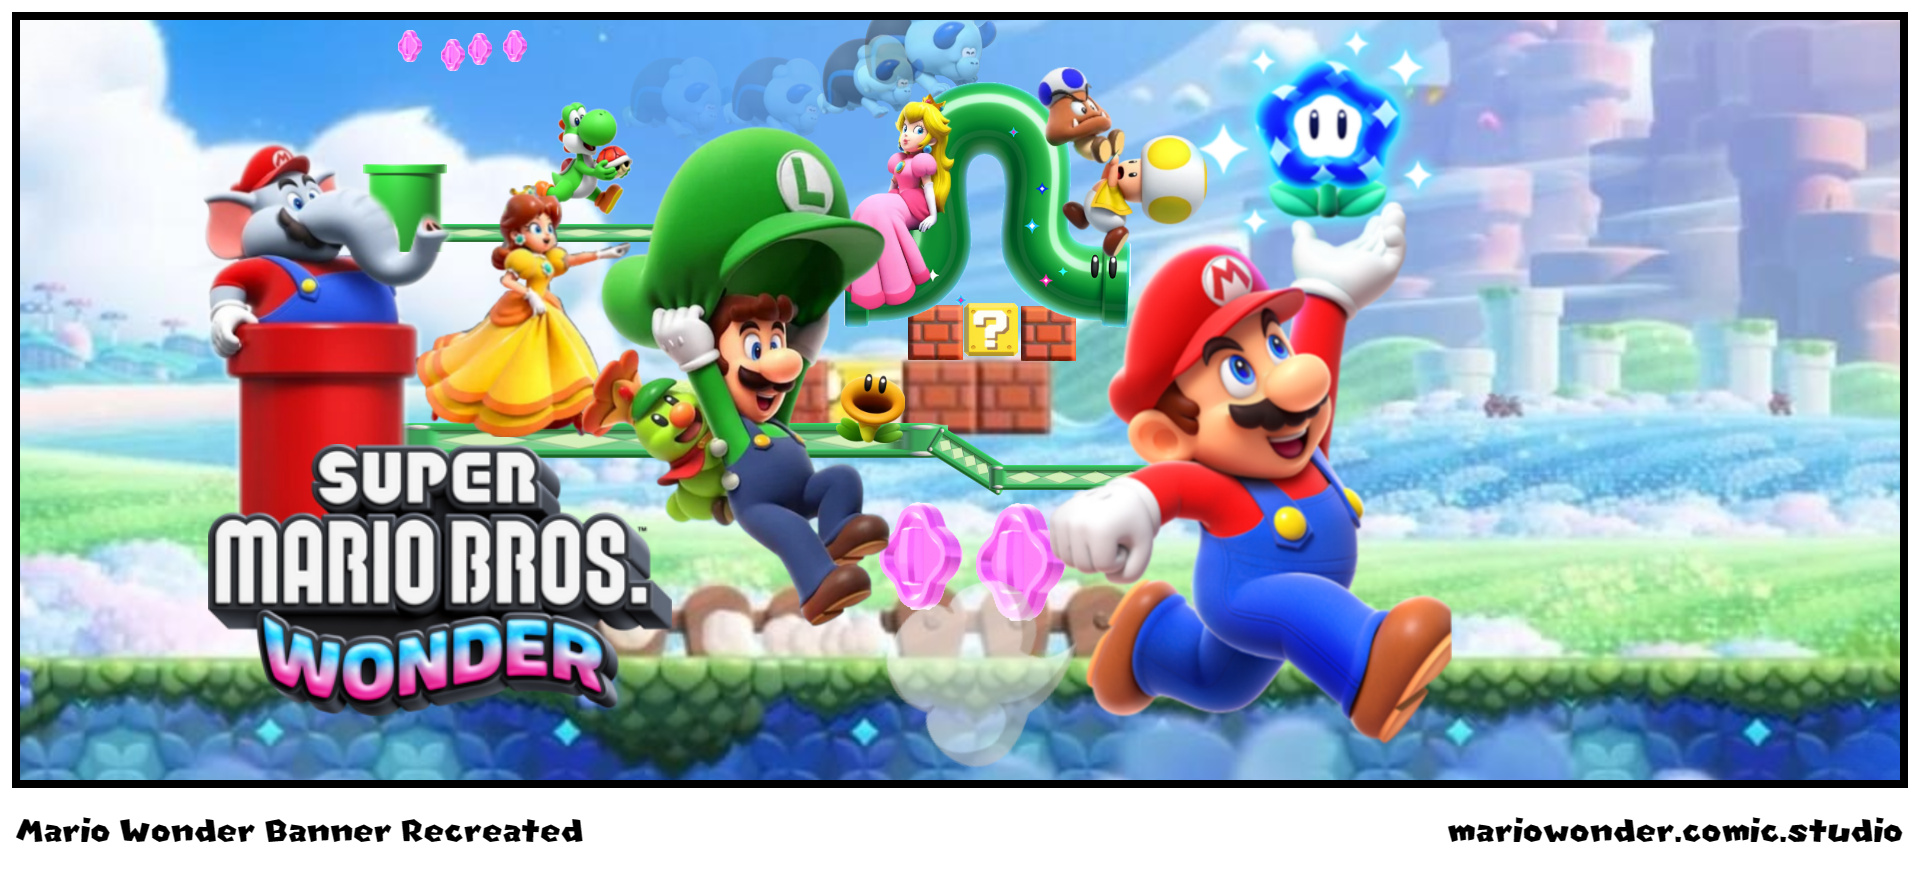 Mario Wonder Banner Recreated